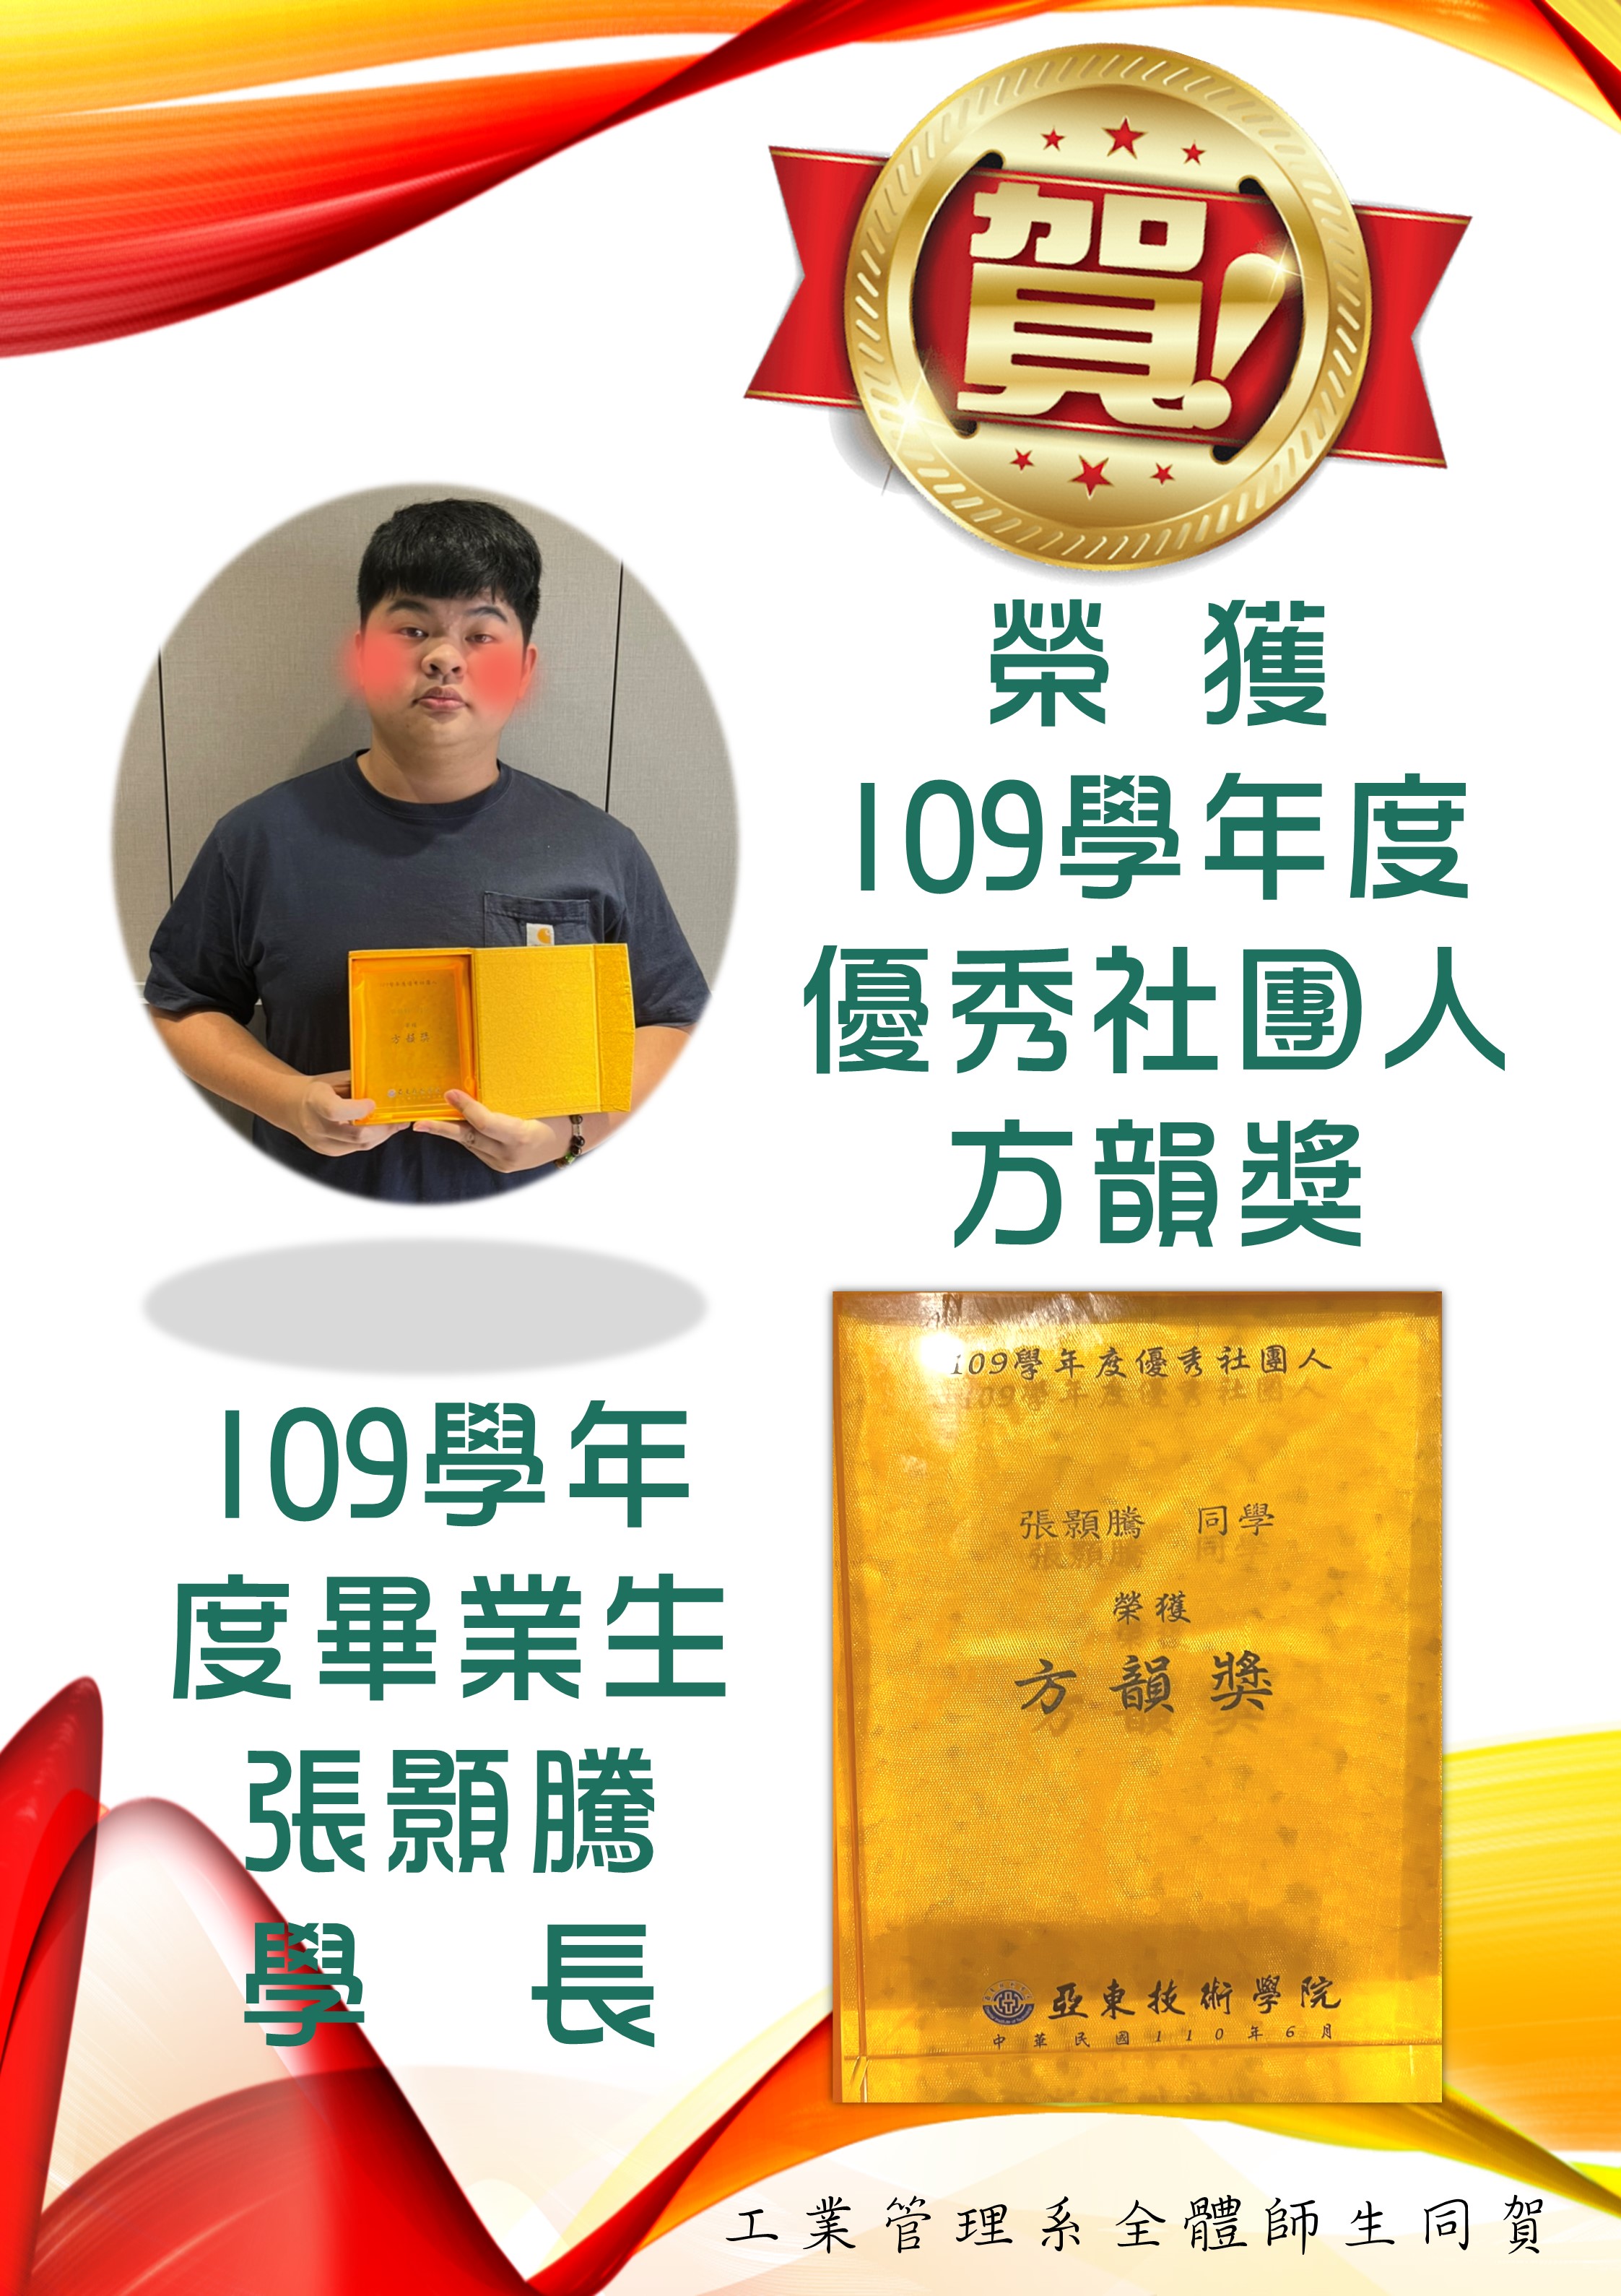 畢業生張顥騰榮獲109學年優秀社團人芳韻獎(另開新視窗)